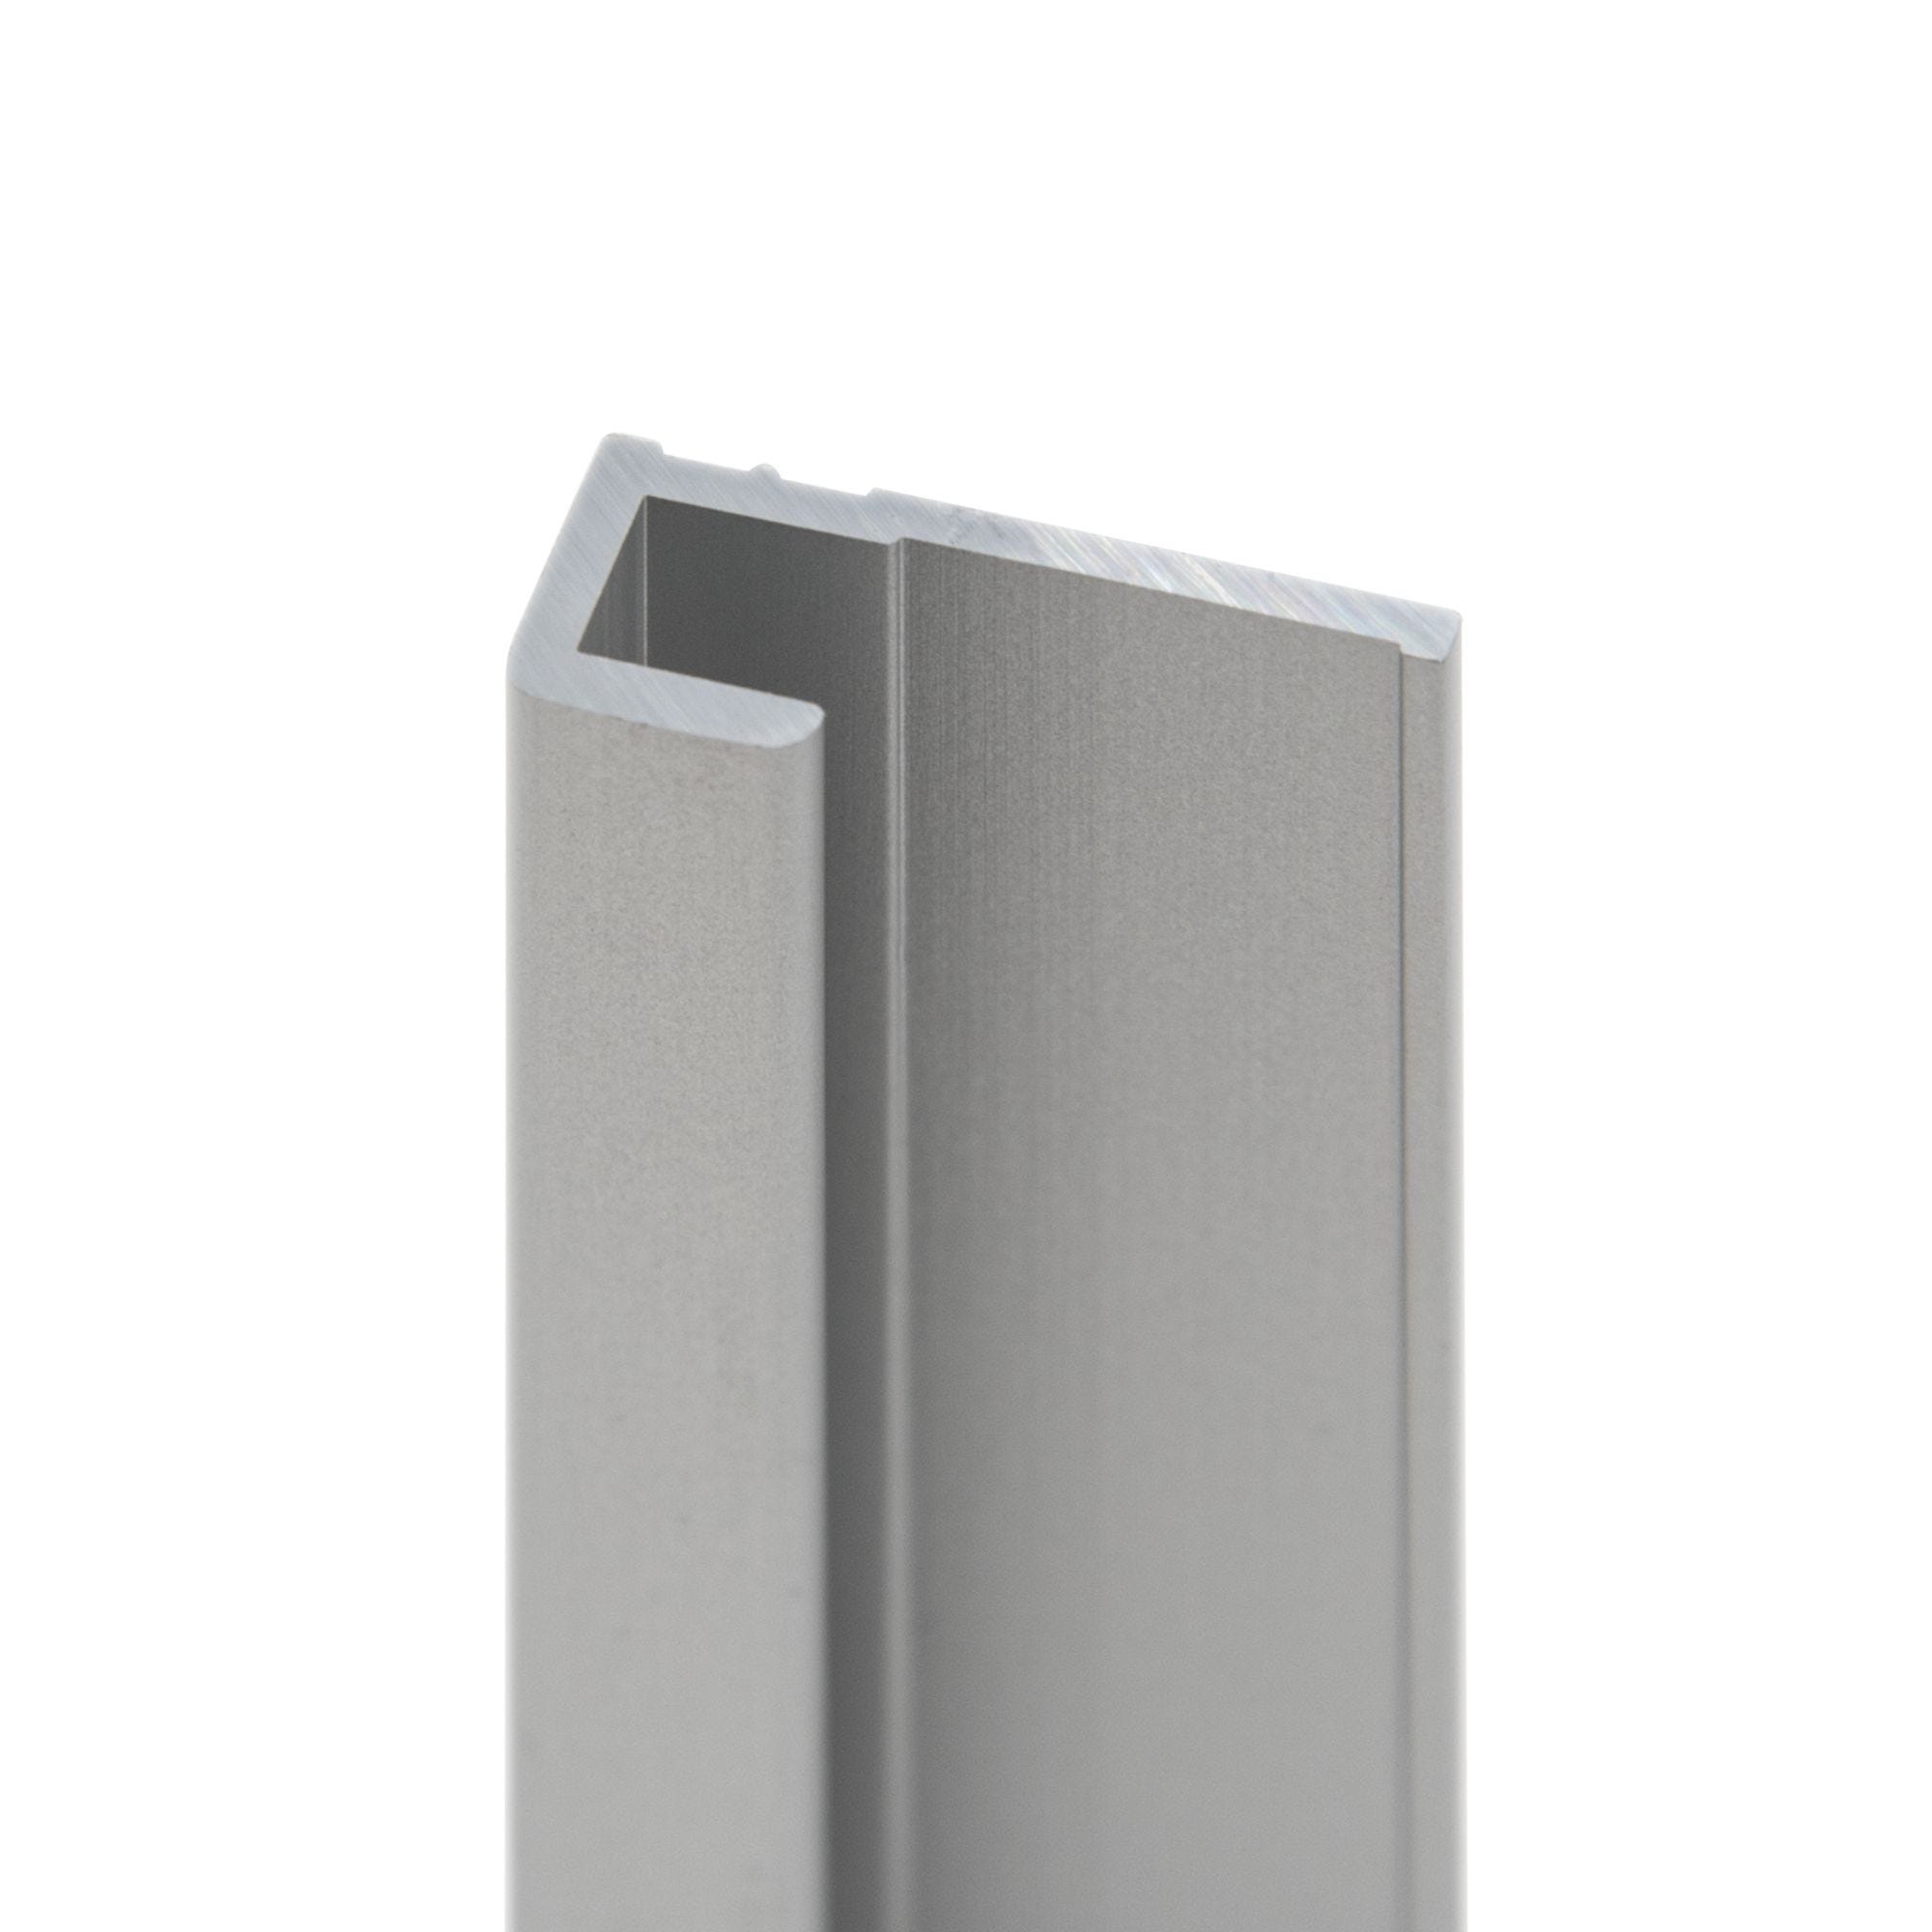 Schulte Pack de 2 profilés de finition + 1 profilé d’angle + 1 profilé d'extension pour panneaux muraux DécoDesign, 210 cm, alu-argenté 1